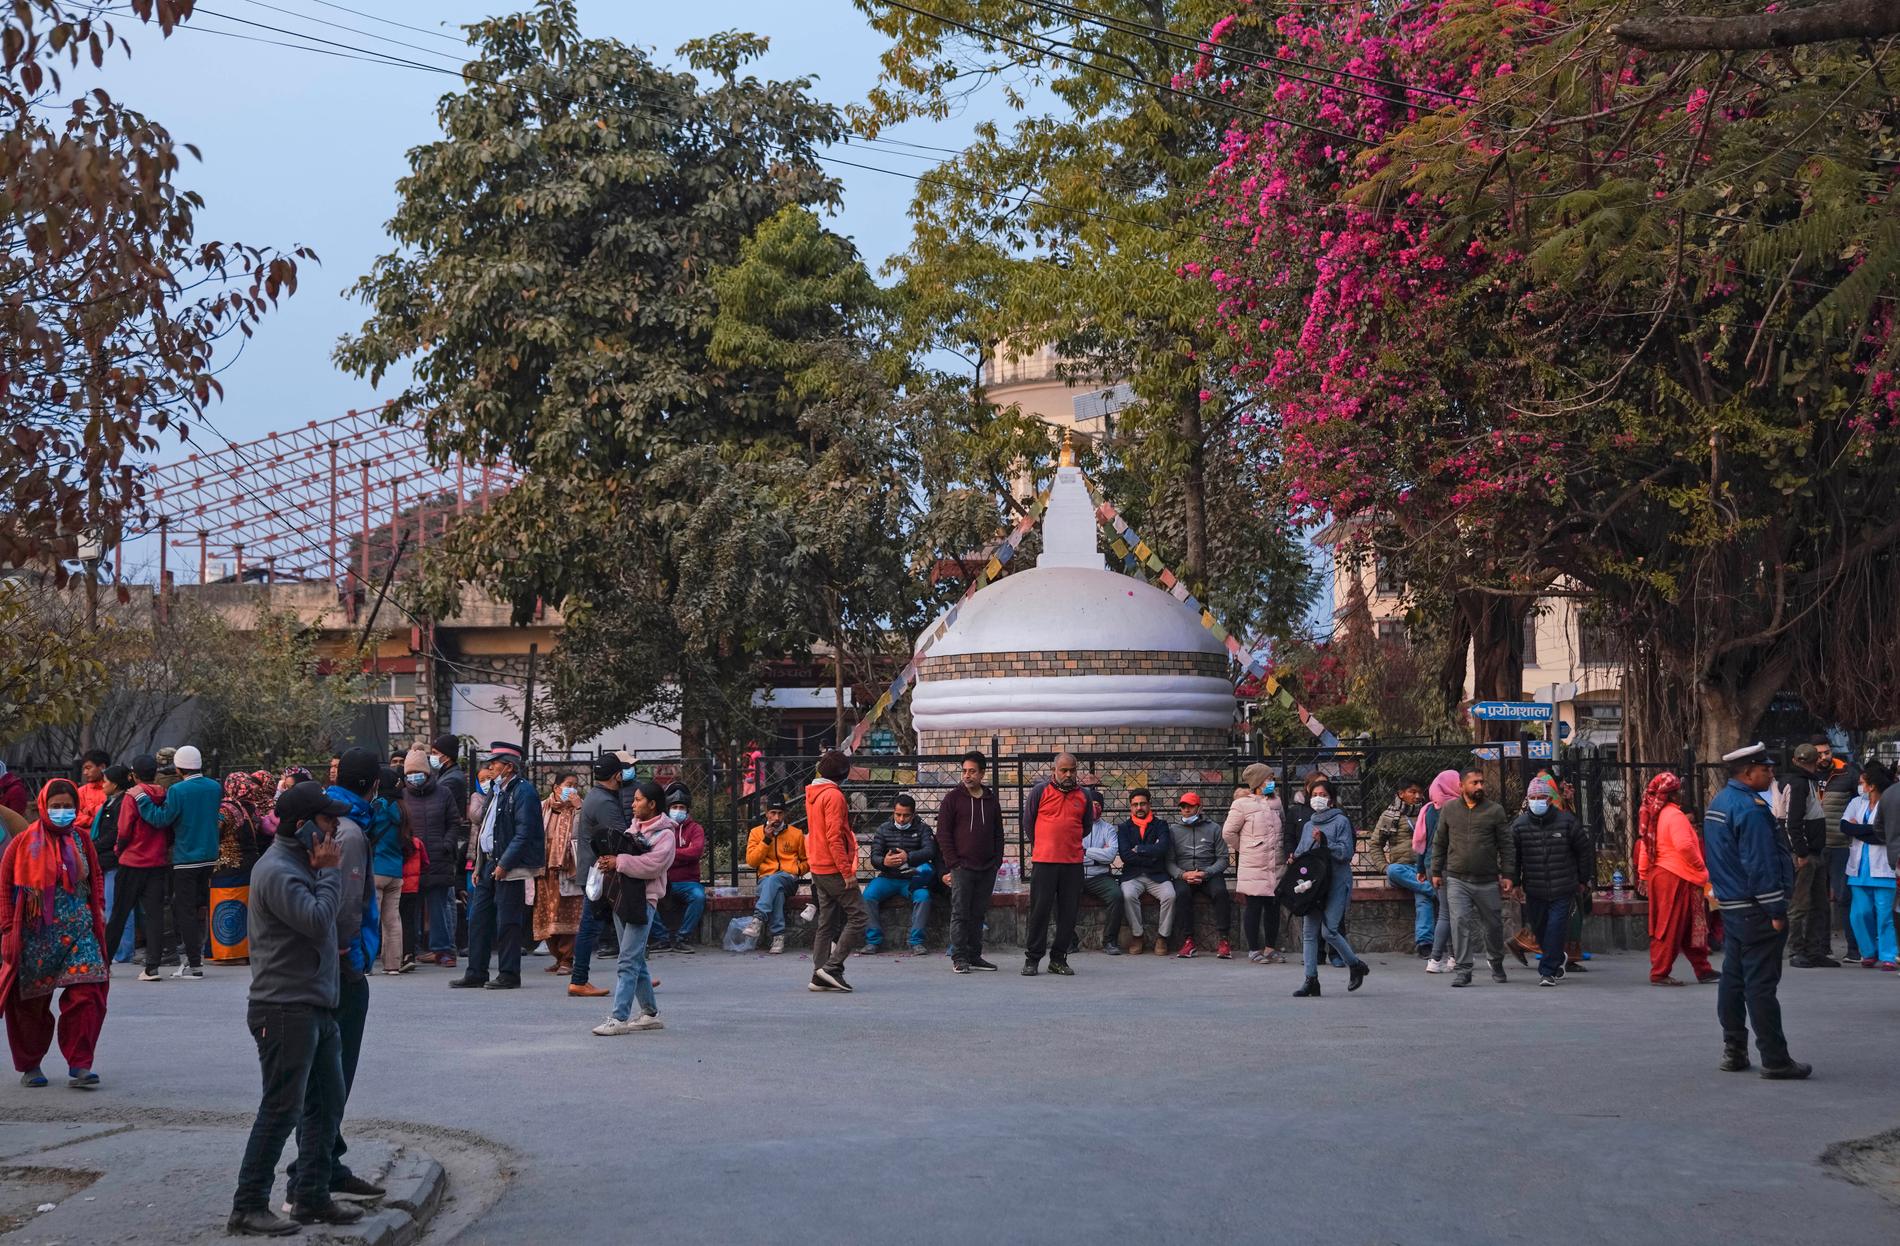 Många oroliga samlades utanför sjukhuset i Pokhara efter nyheten om flygkraschen.